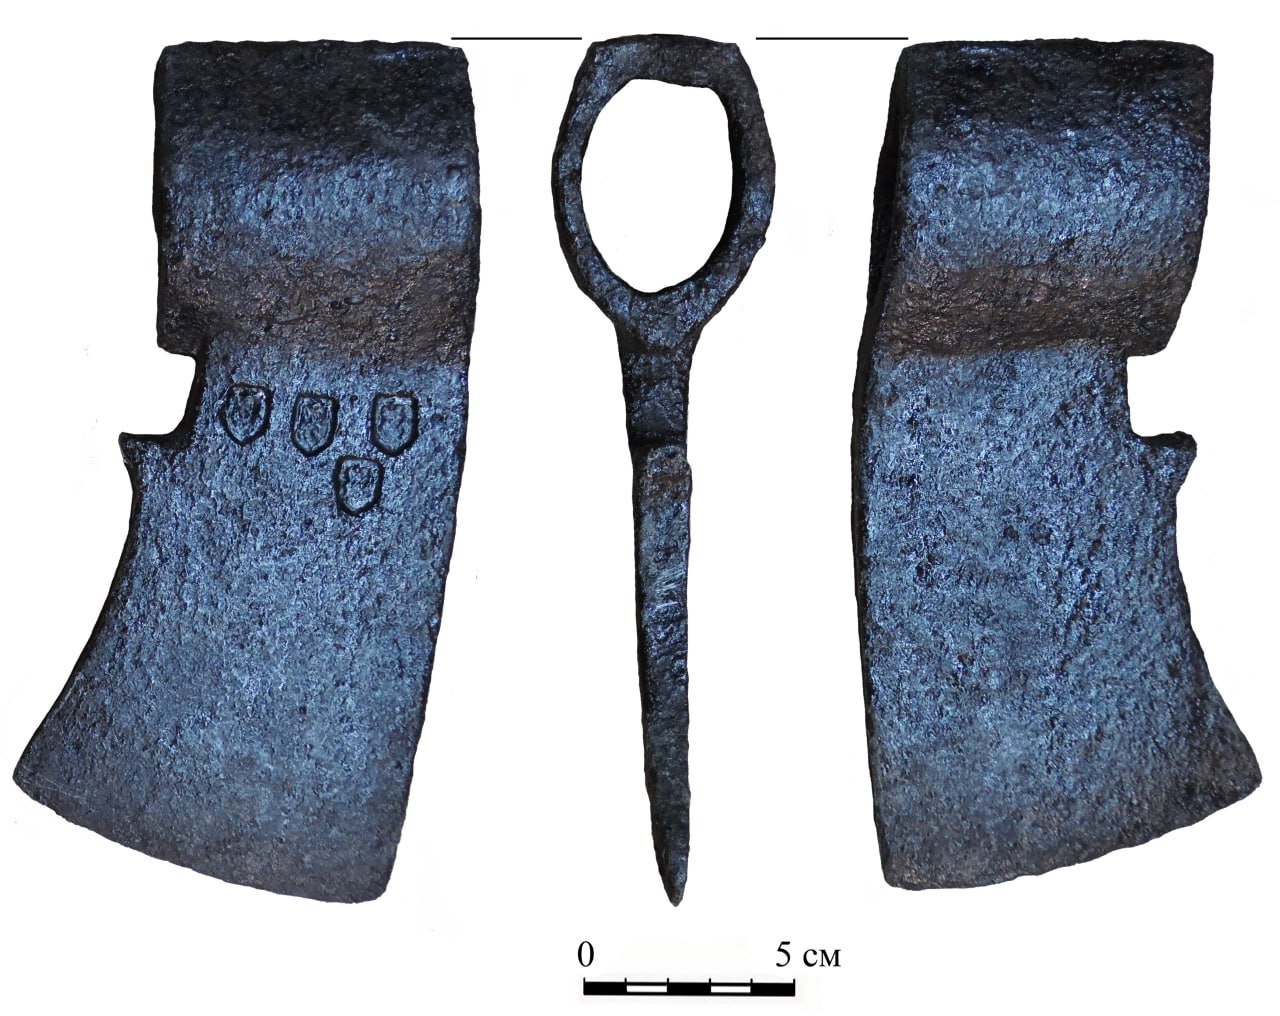 Сокира бойова XVI-XVII ст. (Рівненський обласний краєзнавчий музей CC BY-NC-SA)